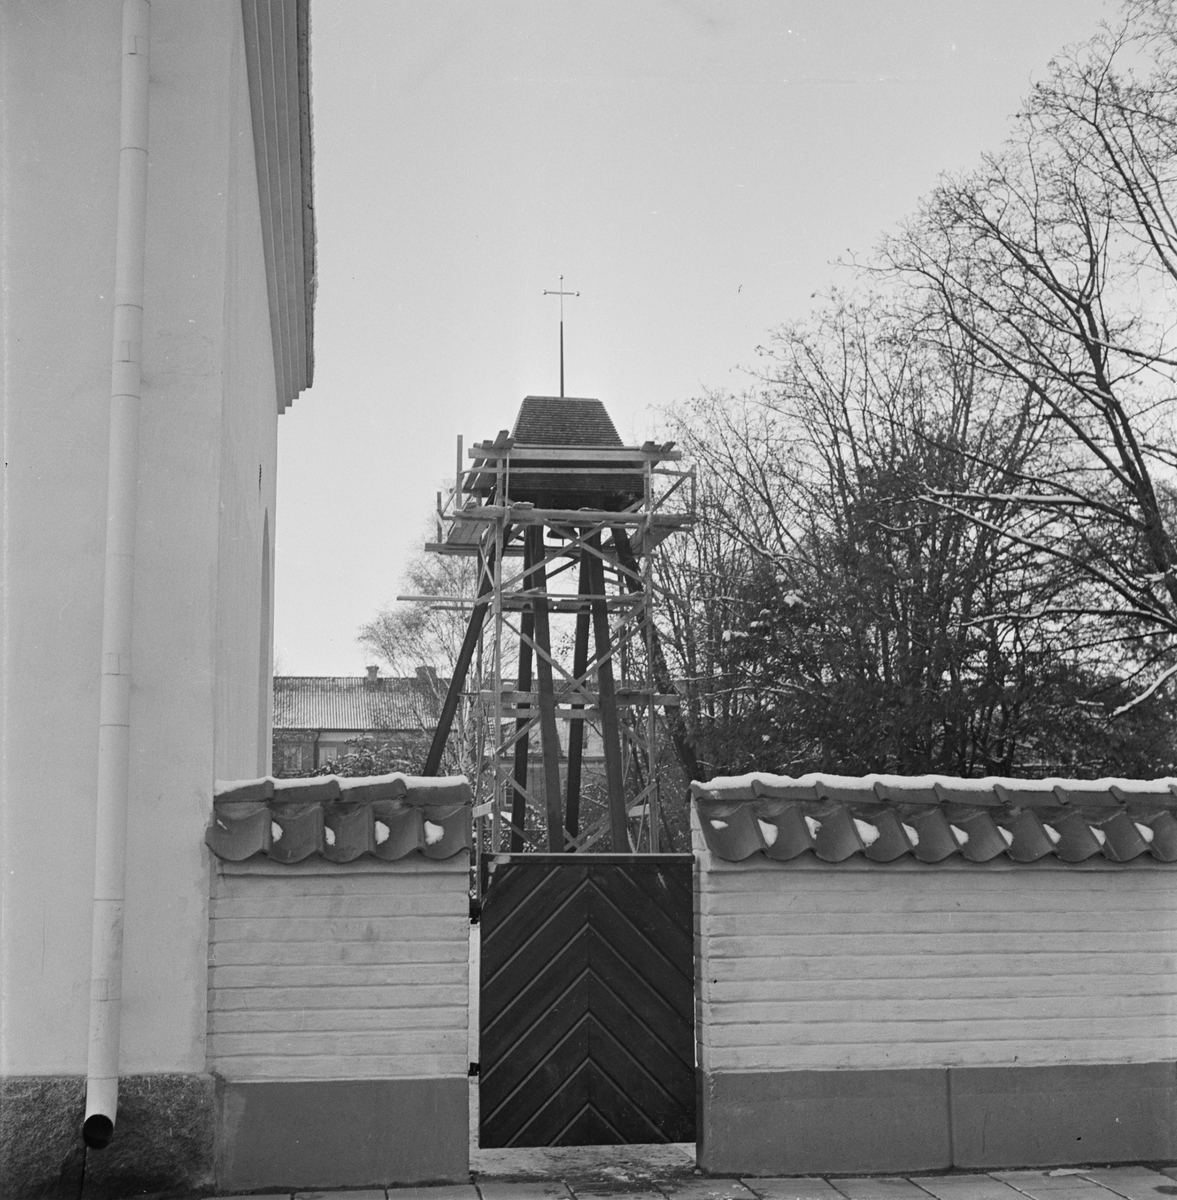 Vindhemskyrkan, invigning av klockstapeln, Uppsala, november 1955